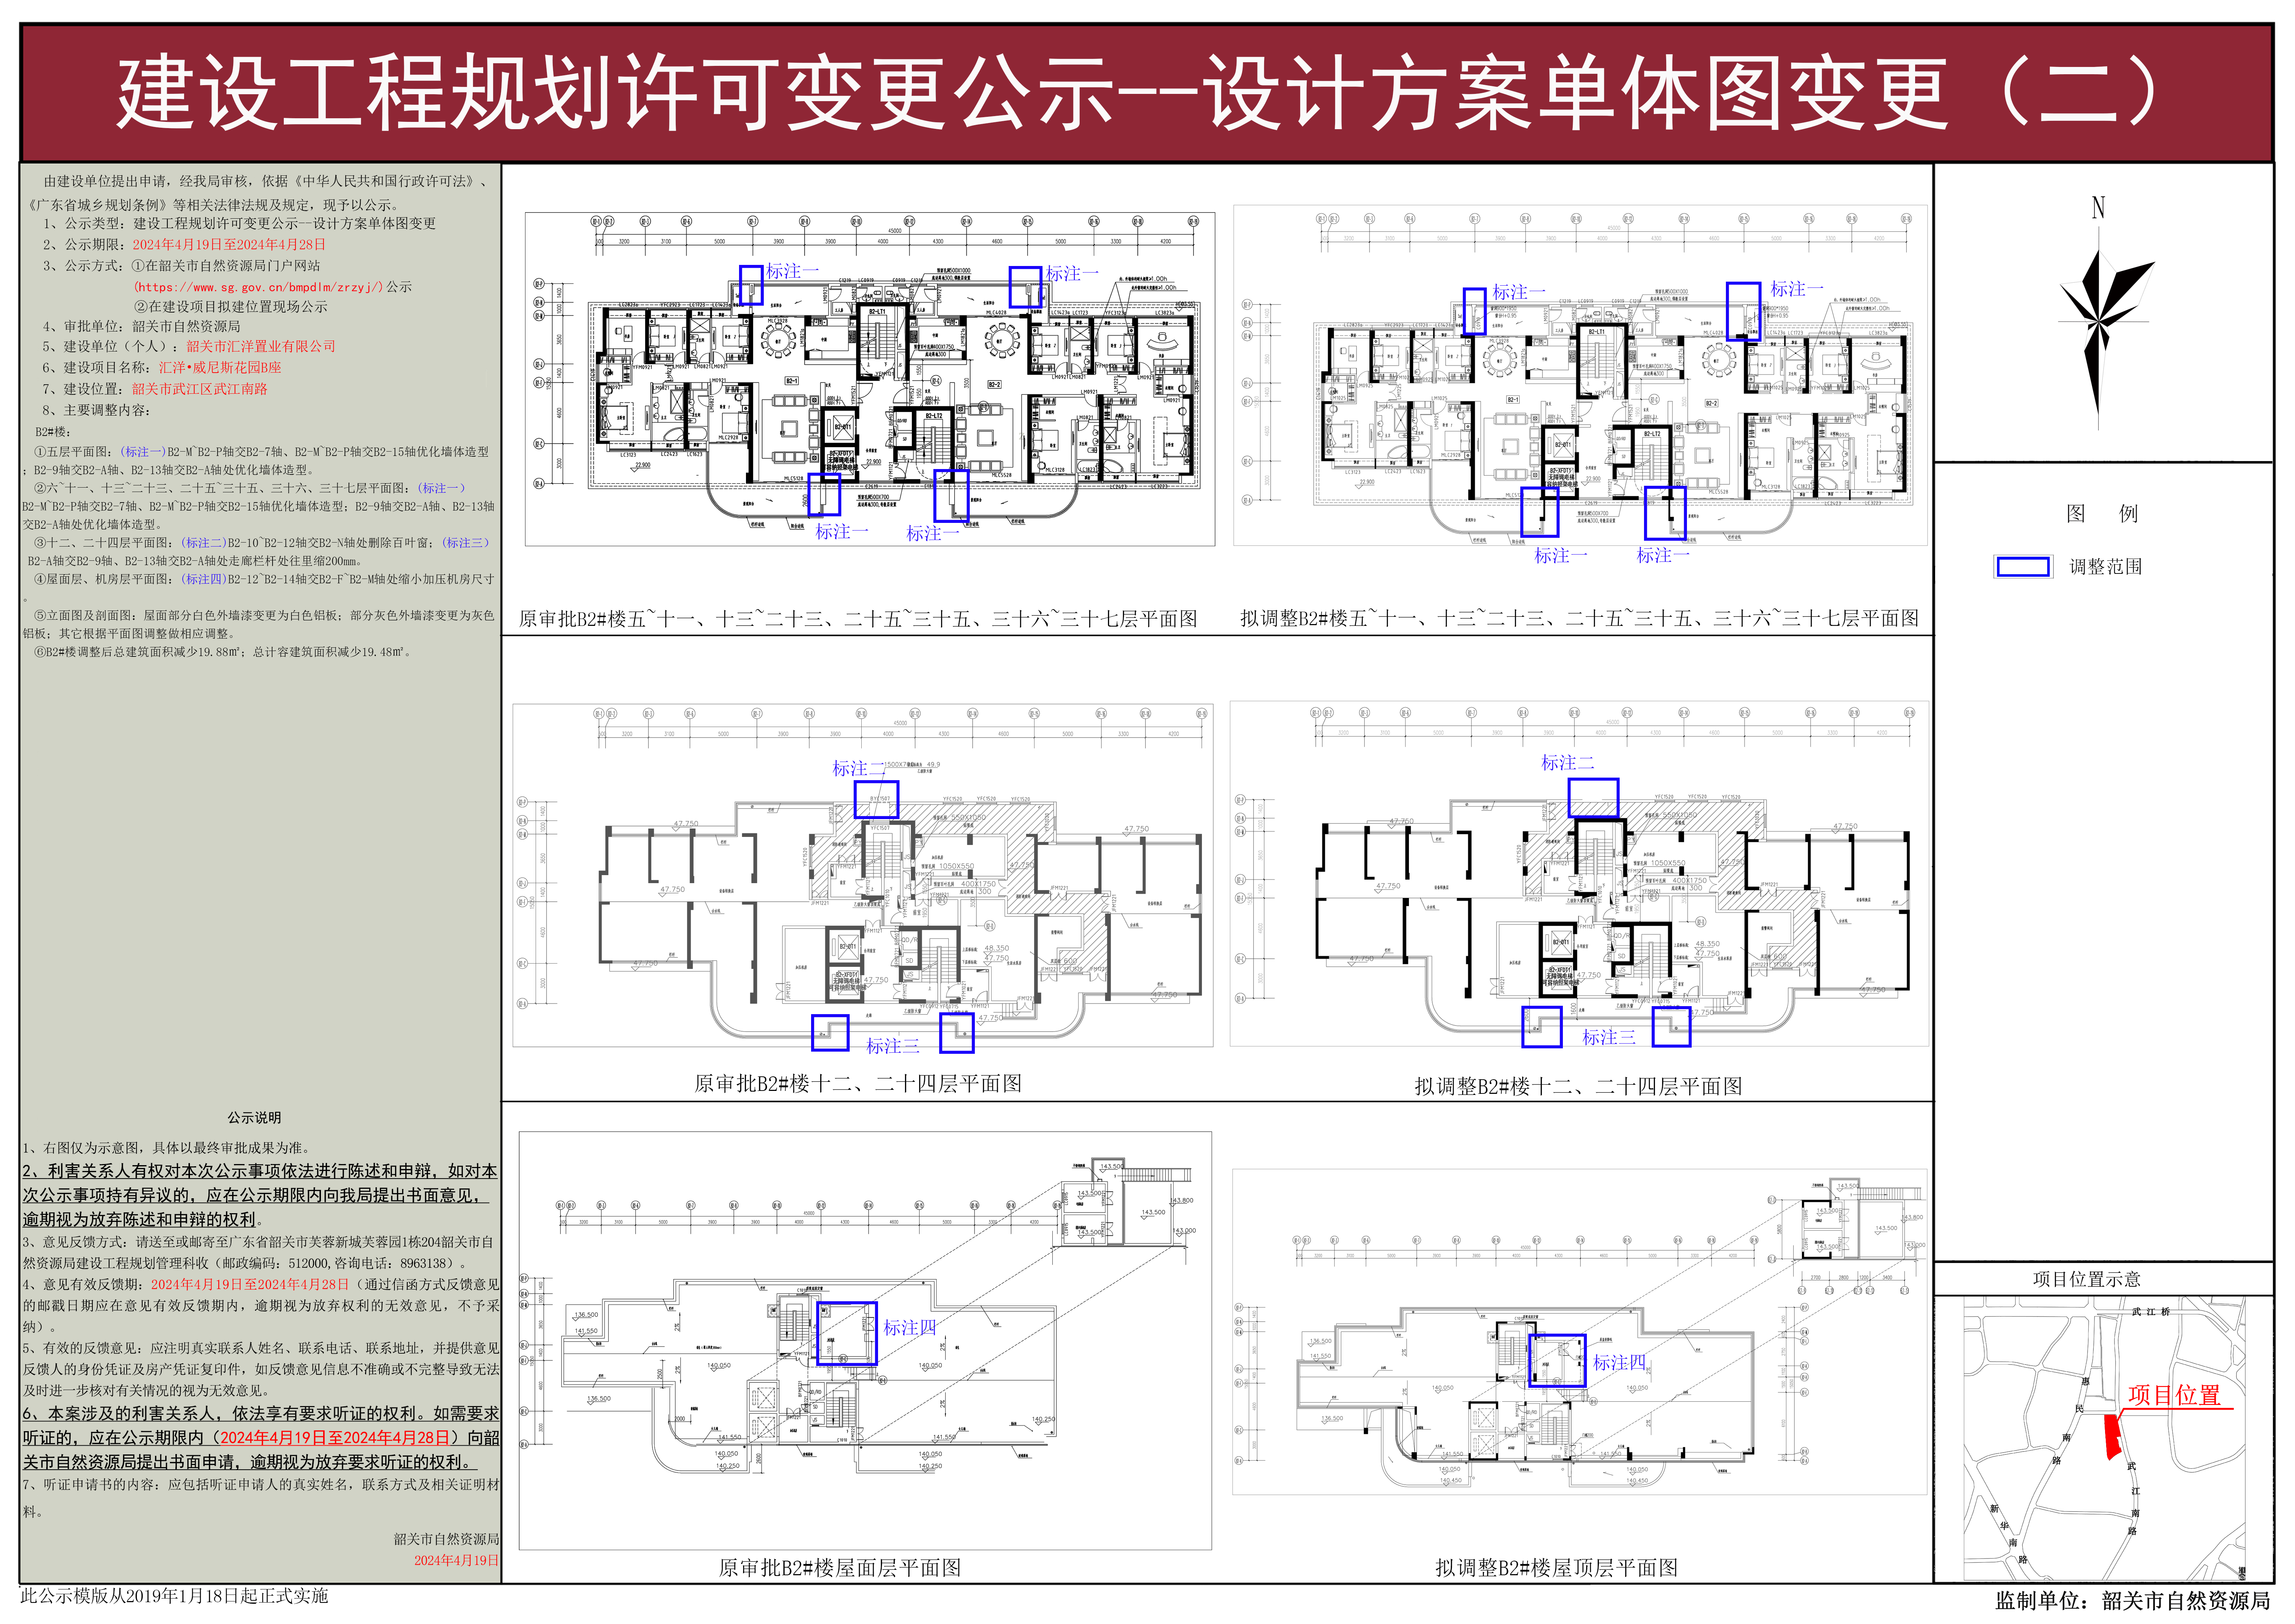 02汇洋&bull;威尼斯花园B座建设工程规划许可变更公示--设计方案单体图变更 .jpg